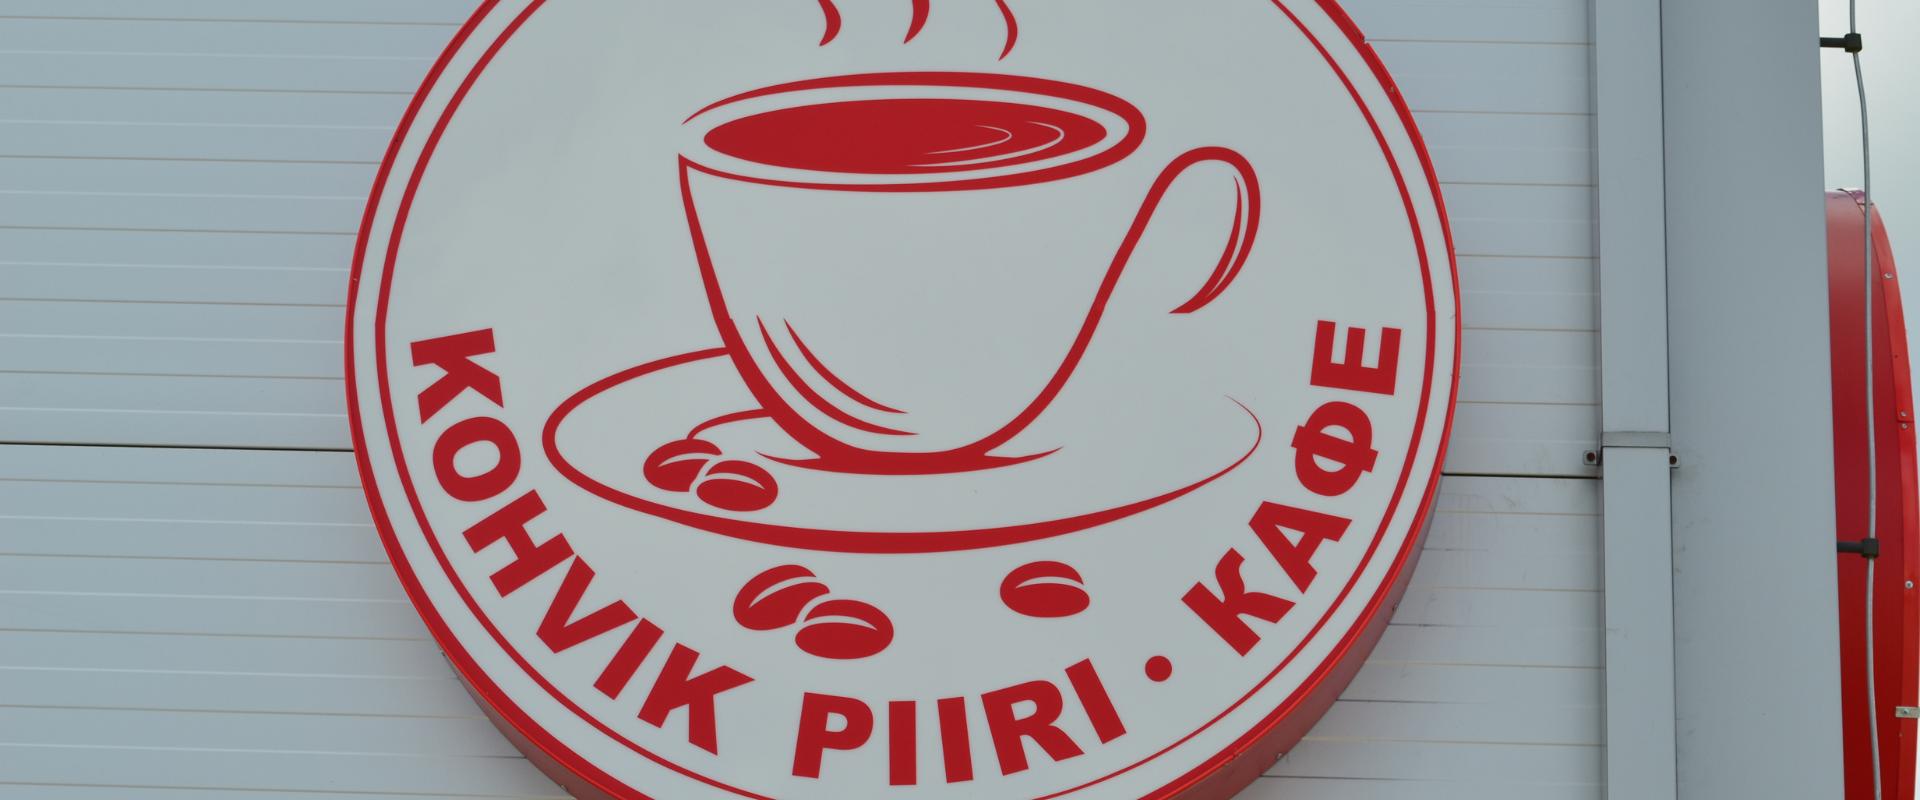 Café Piiri